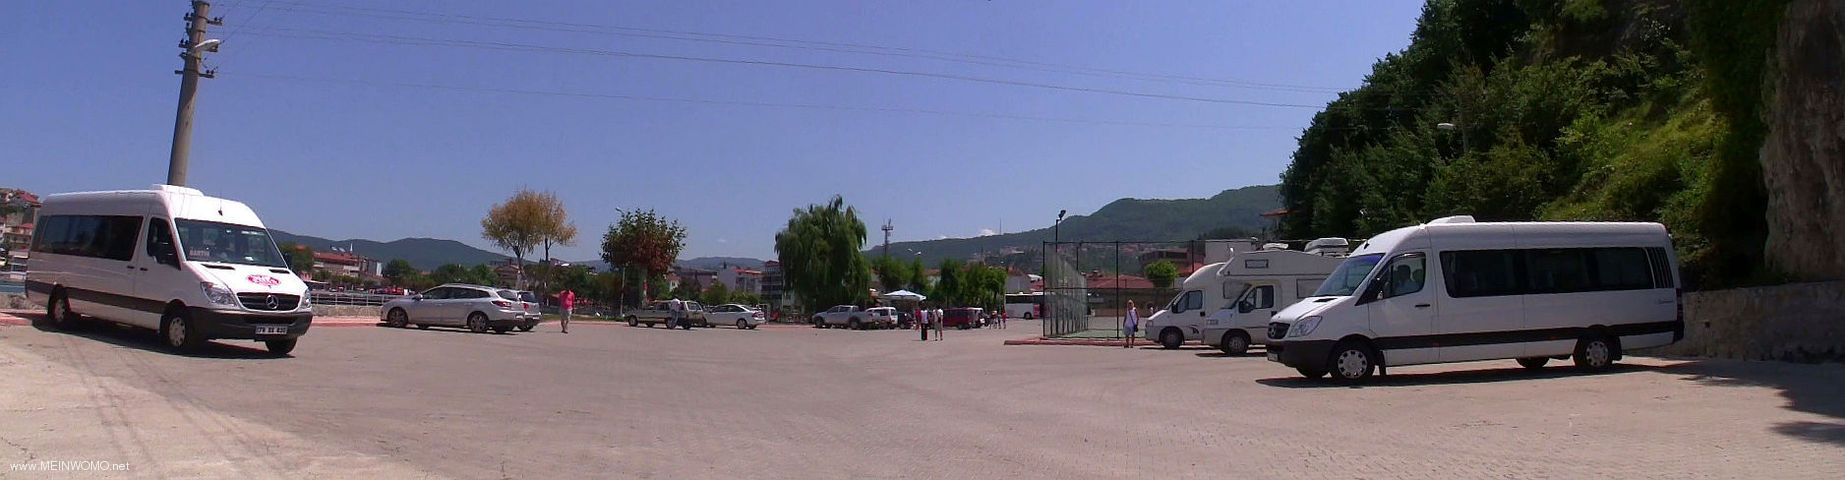 Park- und bernachtungsplatz in Amasra am Schwarzen Meer